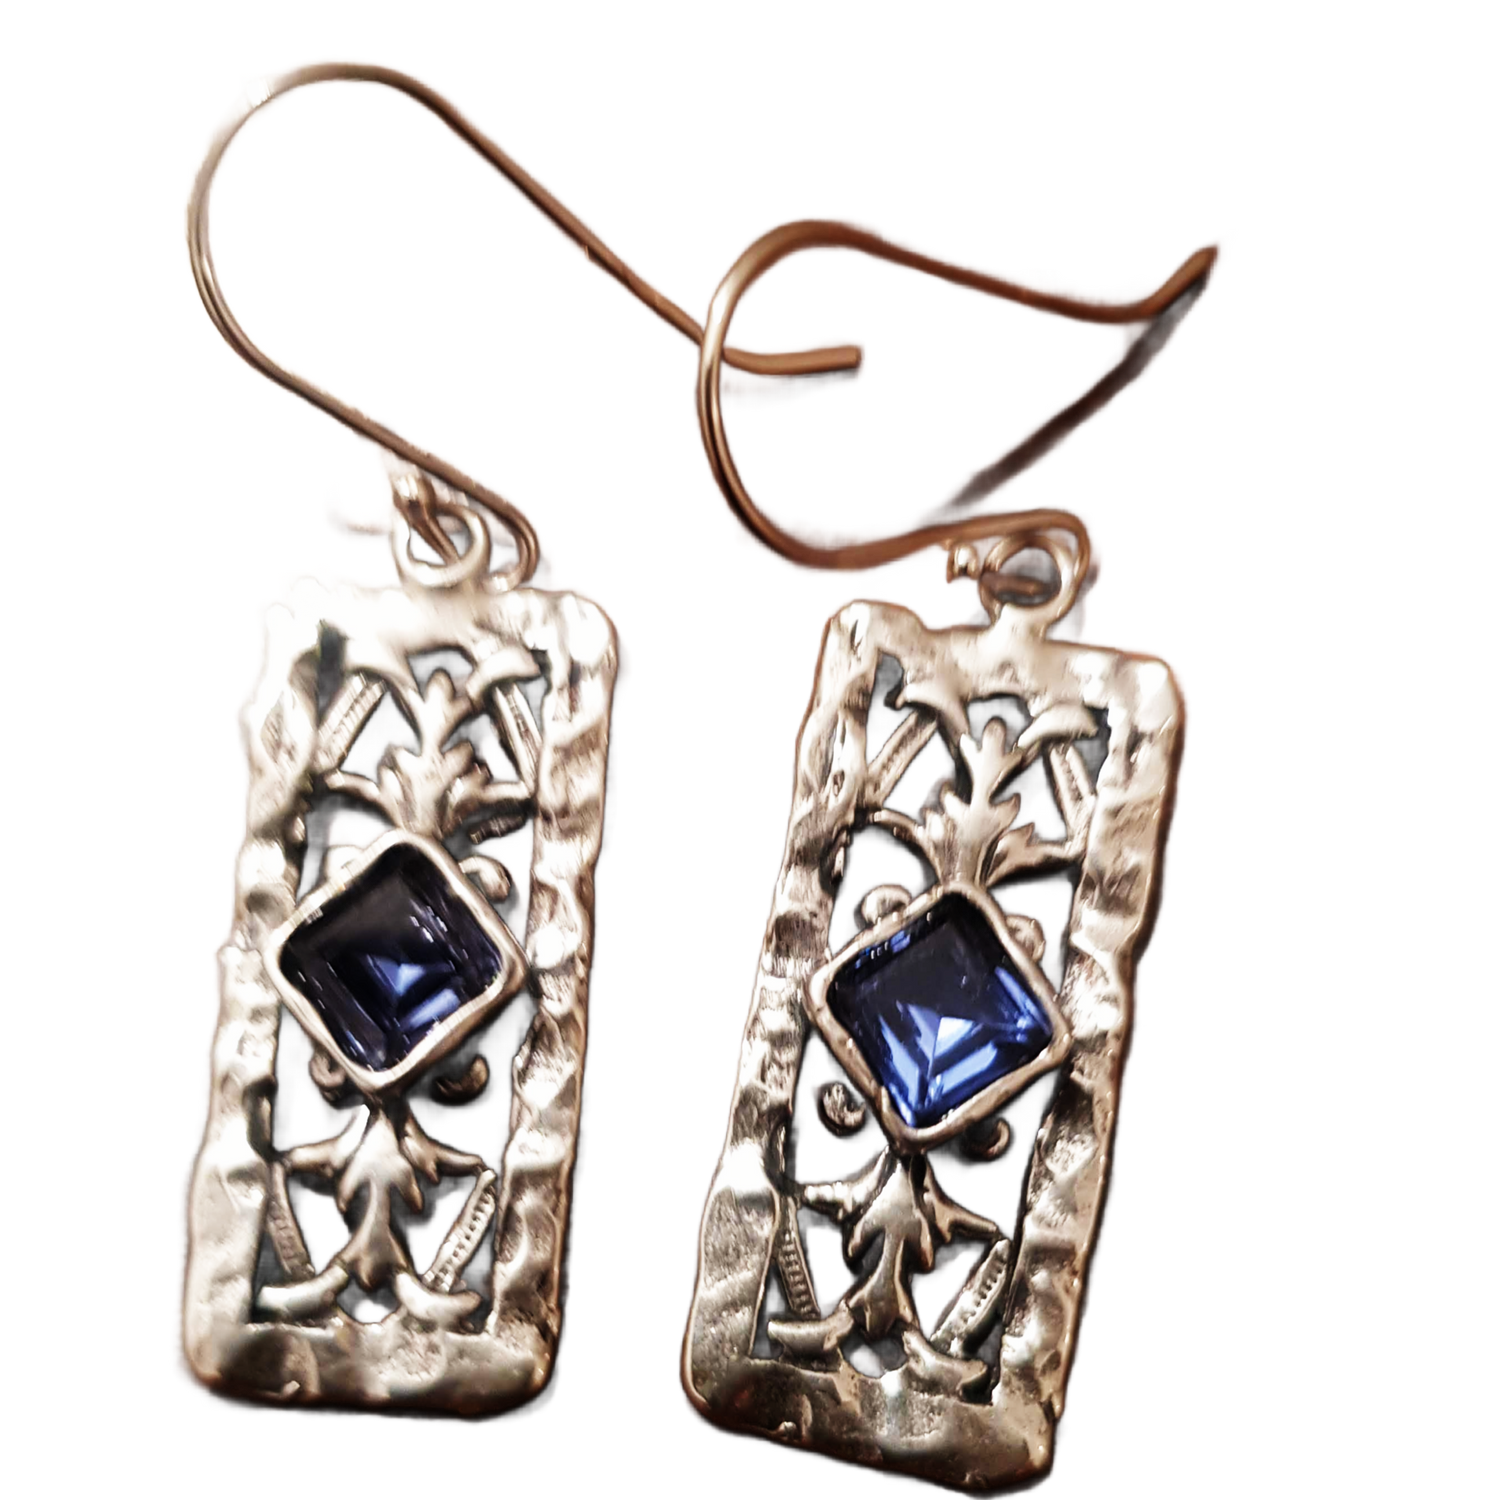 Bluenoemi Jewelry Earrings Sterling silver earrings for woman set Blue Opals / CZ zircons